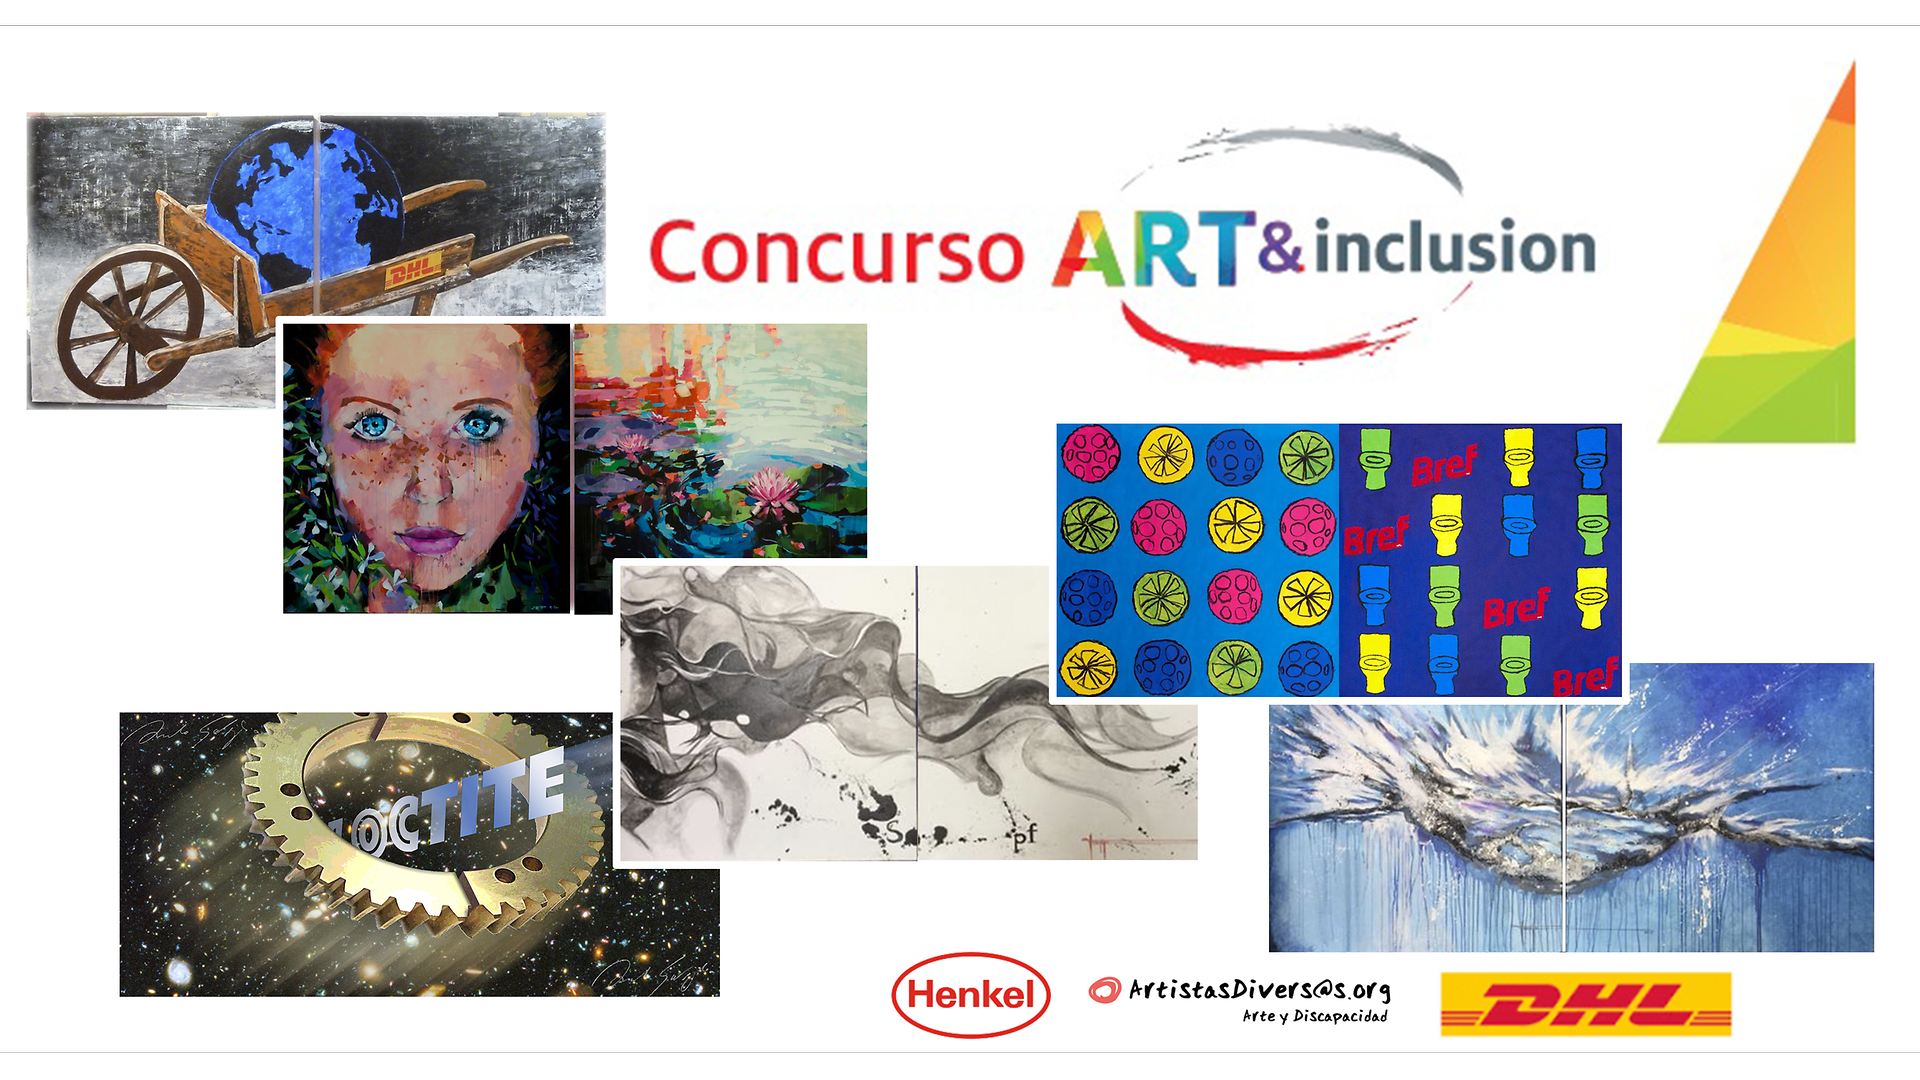 El concurso artístico Art&Inclusion, tras el éxito del año pasado, abre nueva convocatoria donde habrán 7 obras ganadoras para decorar la fábrica de Henkel de Montornès del Vallès y en el almacén logístico de DHL